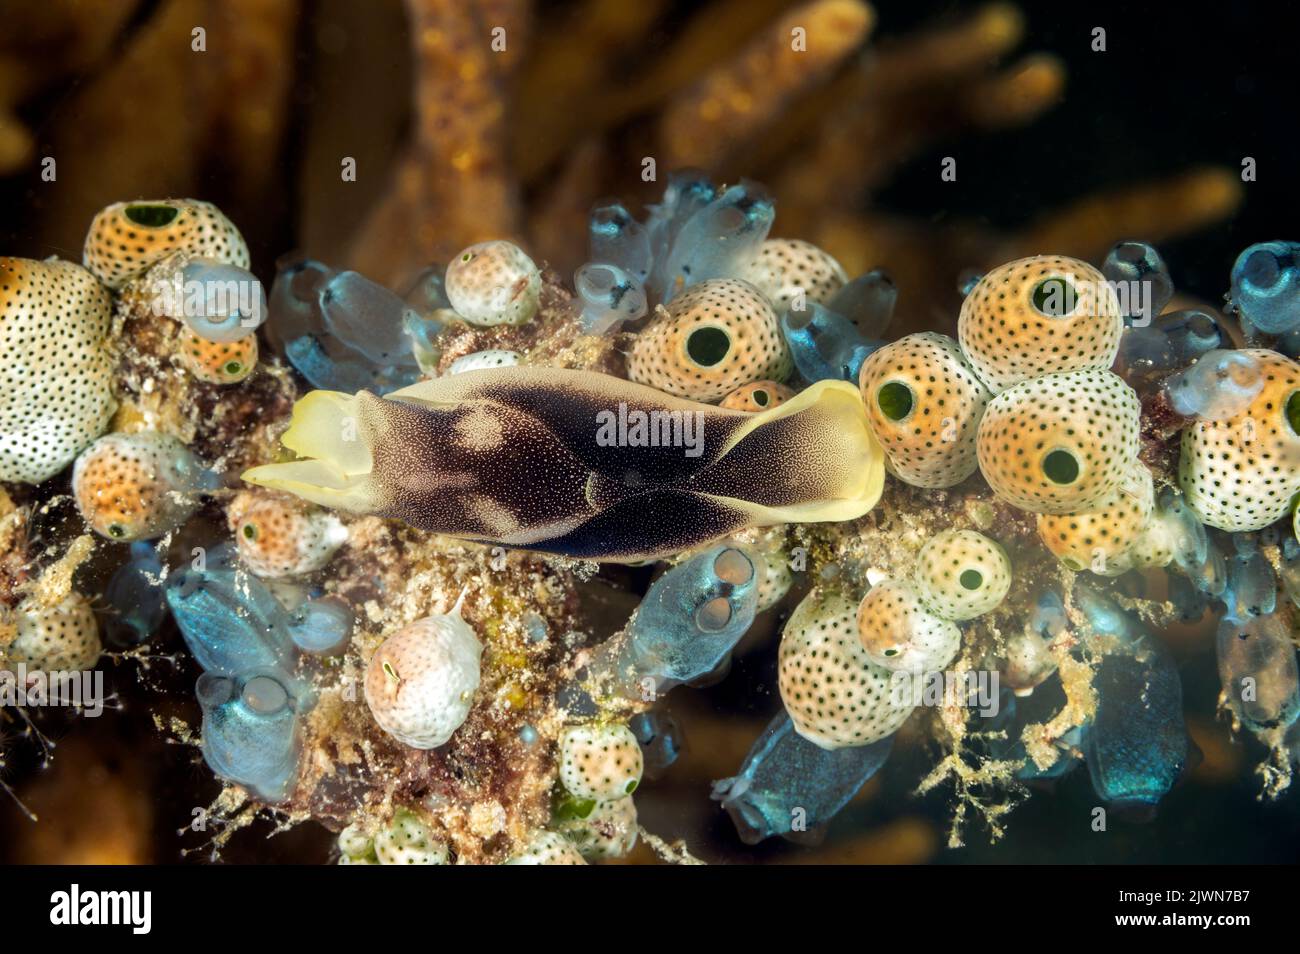 Head shield sea slug, Chelinodura amoena, on the sea squirts, Raja Ampat Indonesia Stock Photo